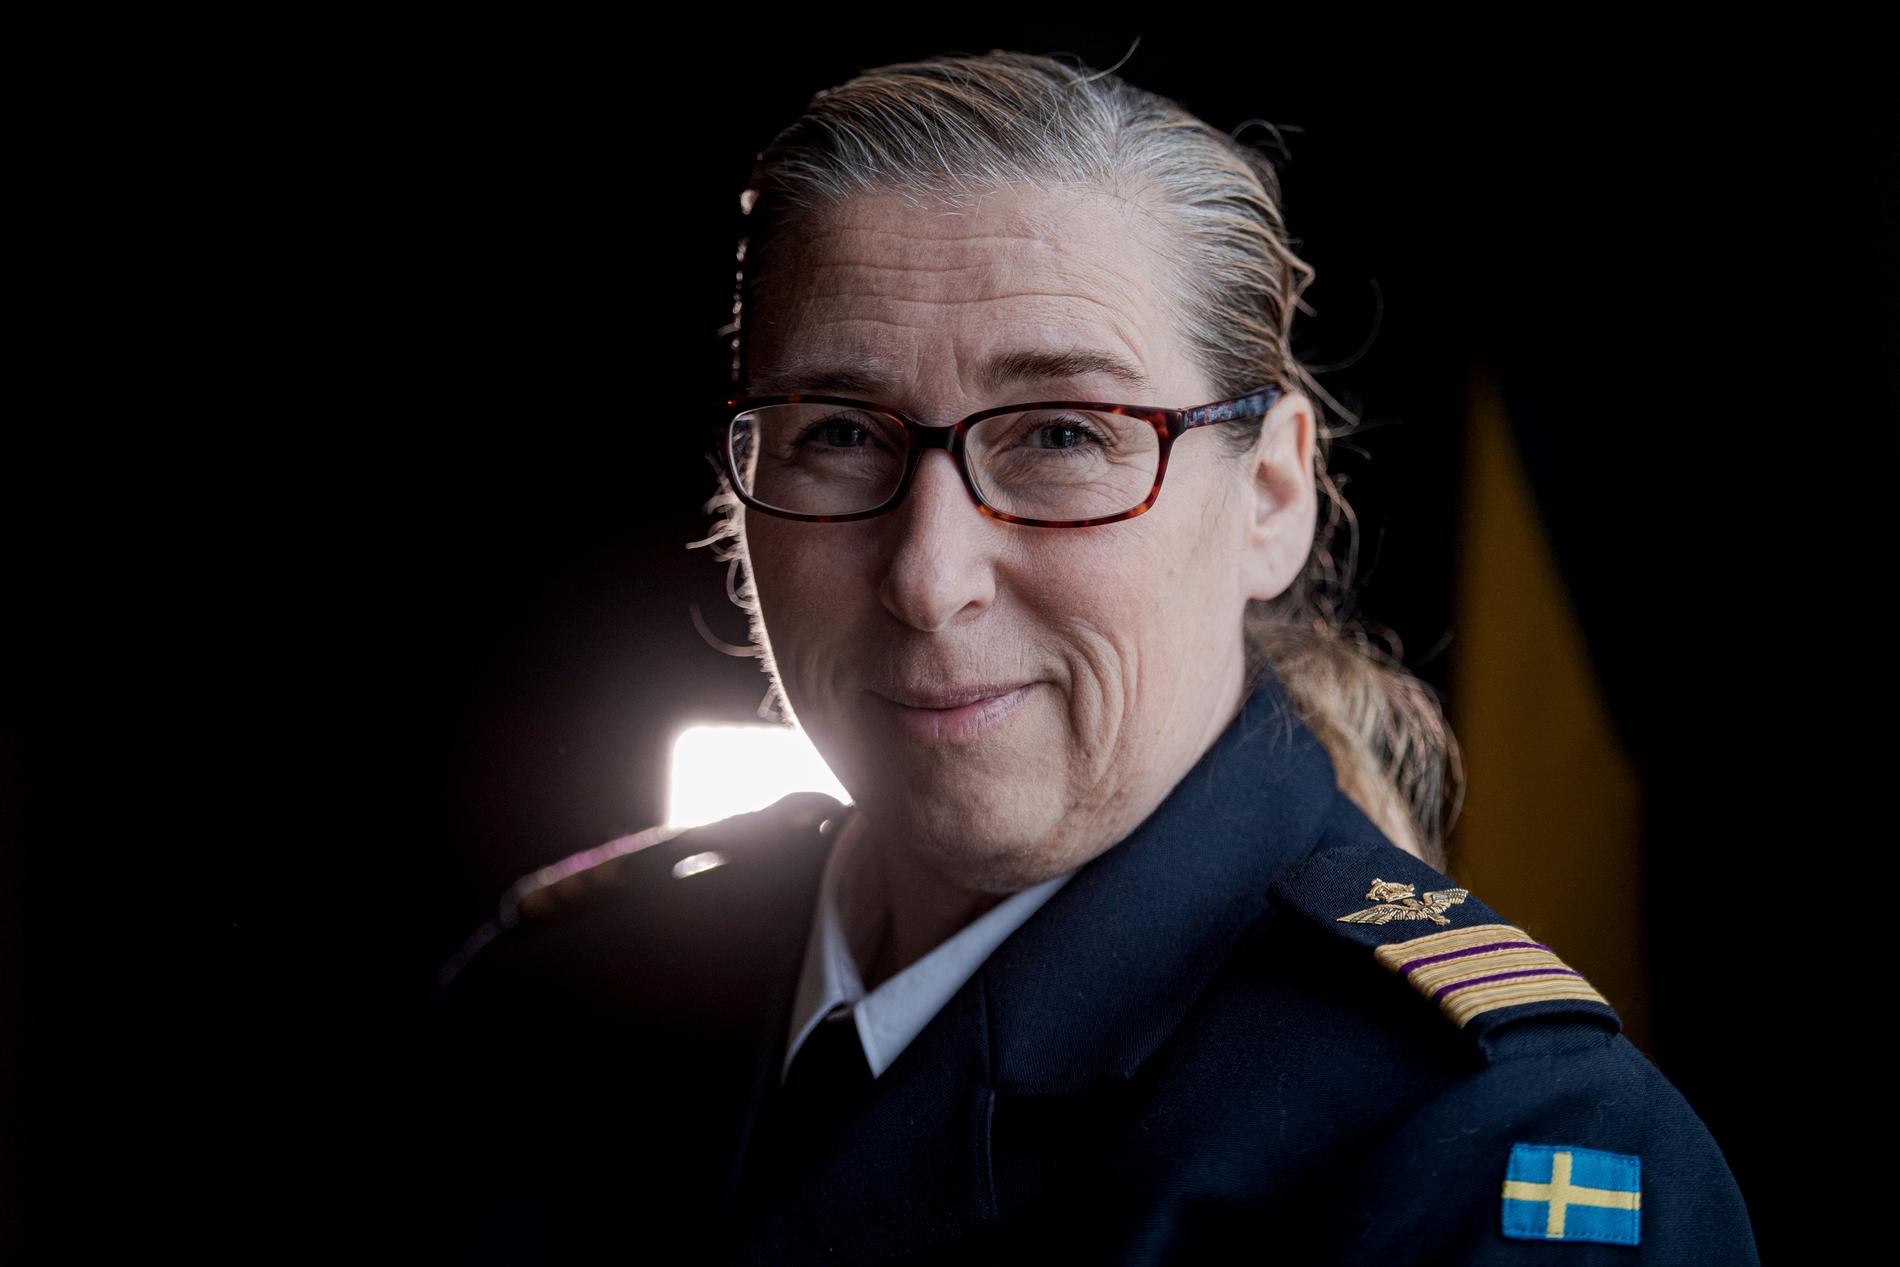 Efter sin civilingenjörsexamen inom rymdteknik doktorerade Ella Carlsson vid Luleå tekniska universitets forskarskola i rymdteknik. Hon disputerade 2008 med en avhandling om Mars. Nu är hon sedan en tid tillbaka rymdchef vid flygvapnet.